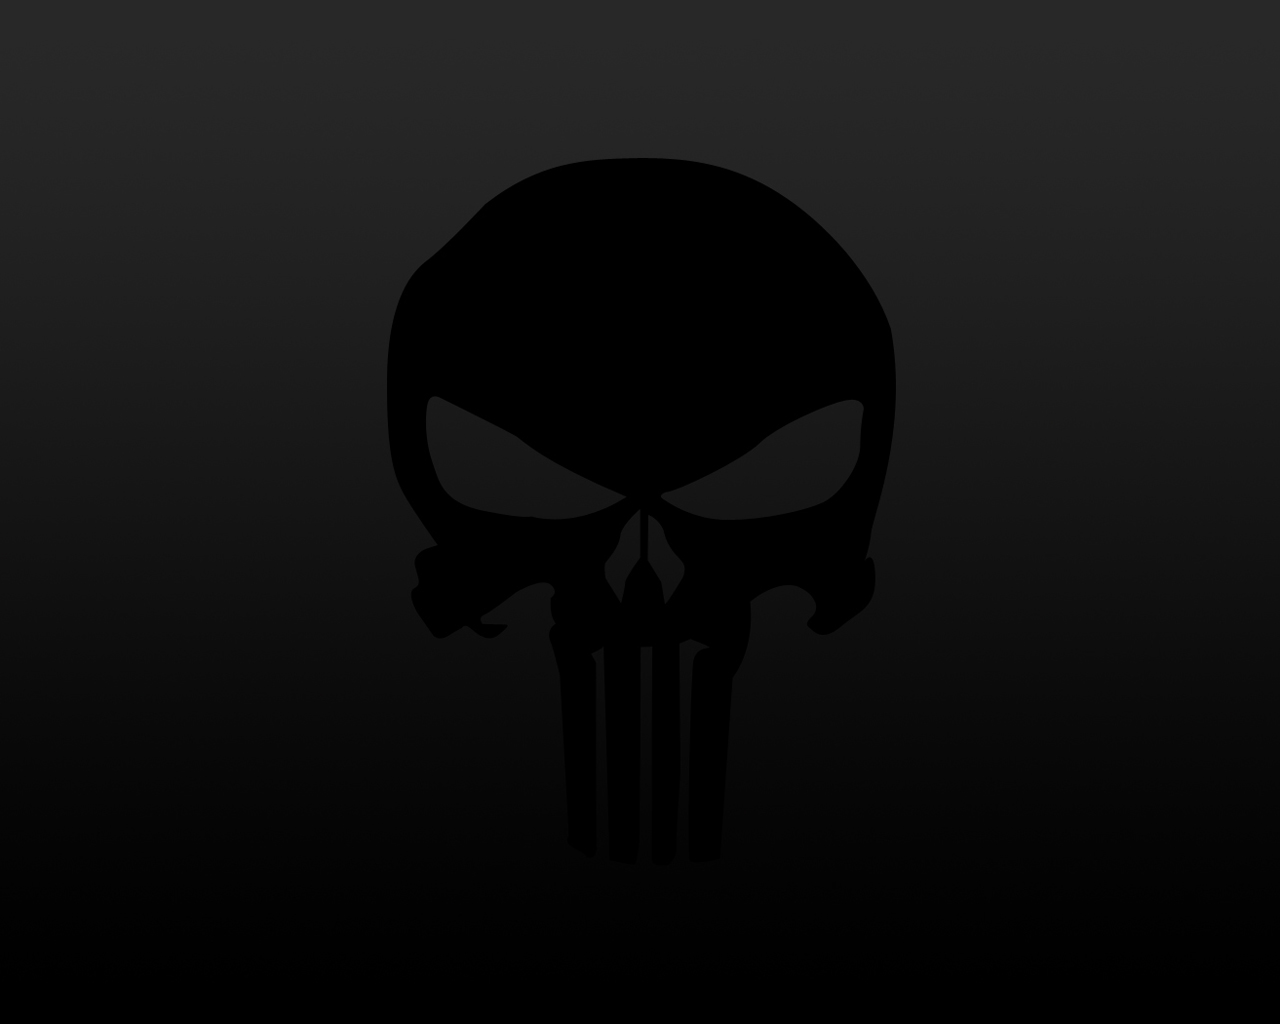  Punisher Skull Wallpaper or download Black Punisher Skull Wallpaper on 1280x1024